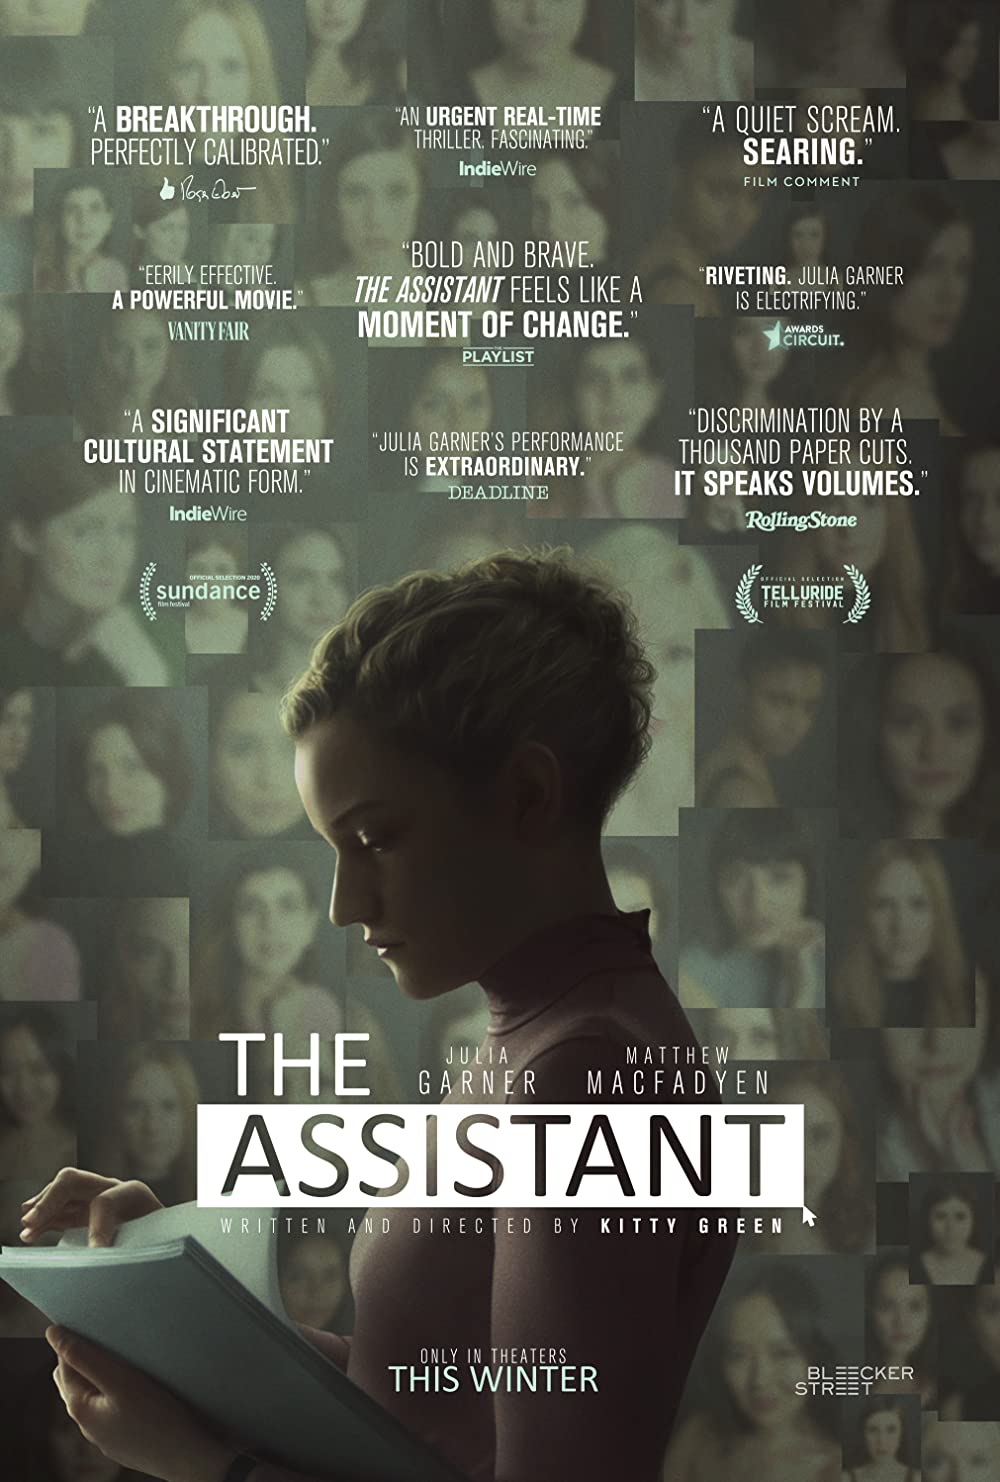 Filmbeschreibung zu The Assistant